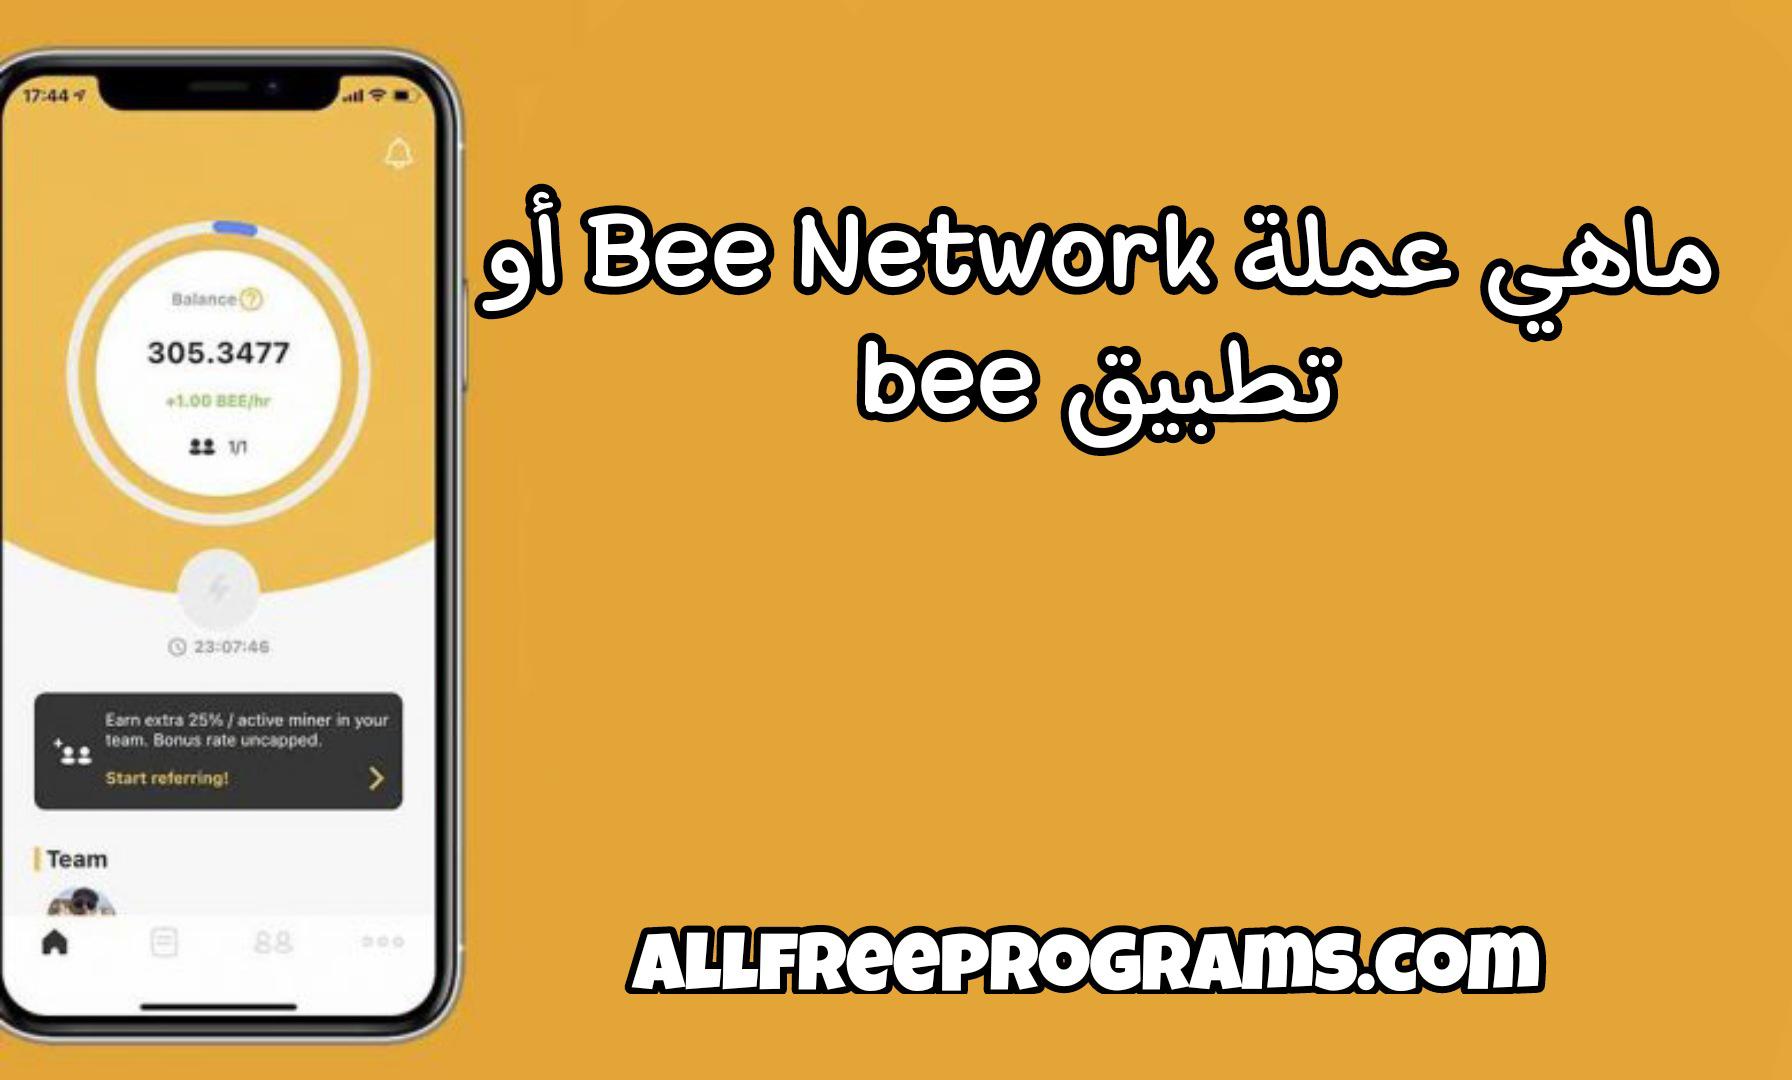 ما هي عملة Bee Network أو تطبيق Bee و كيفية الإشتراك فيها؟